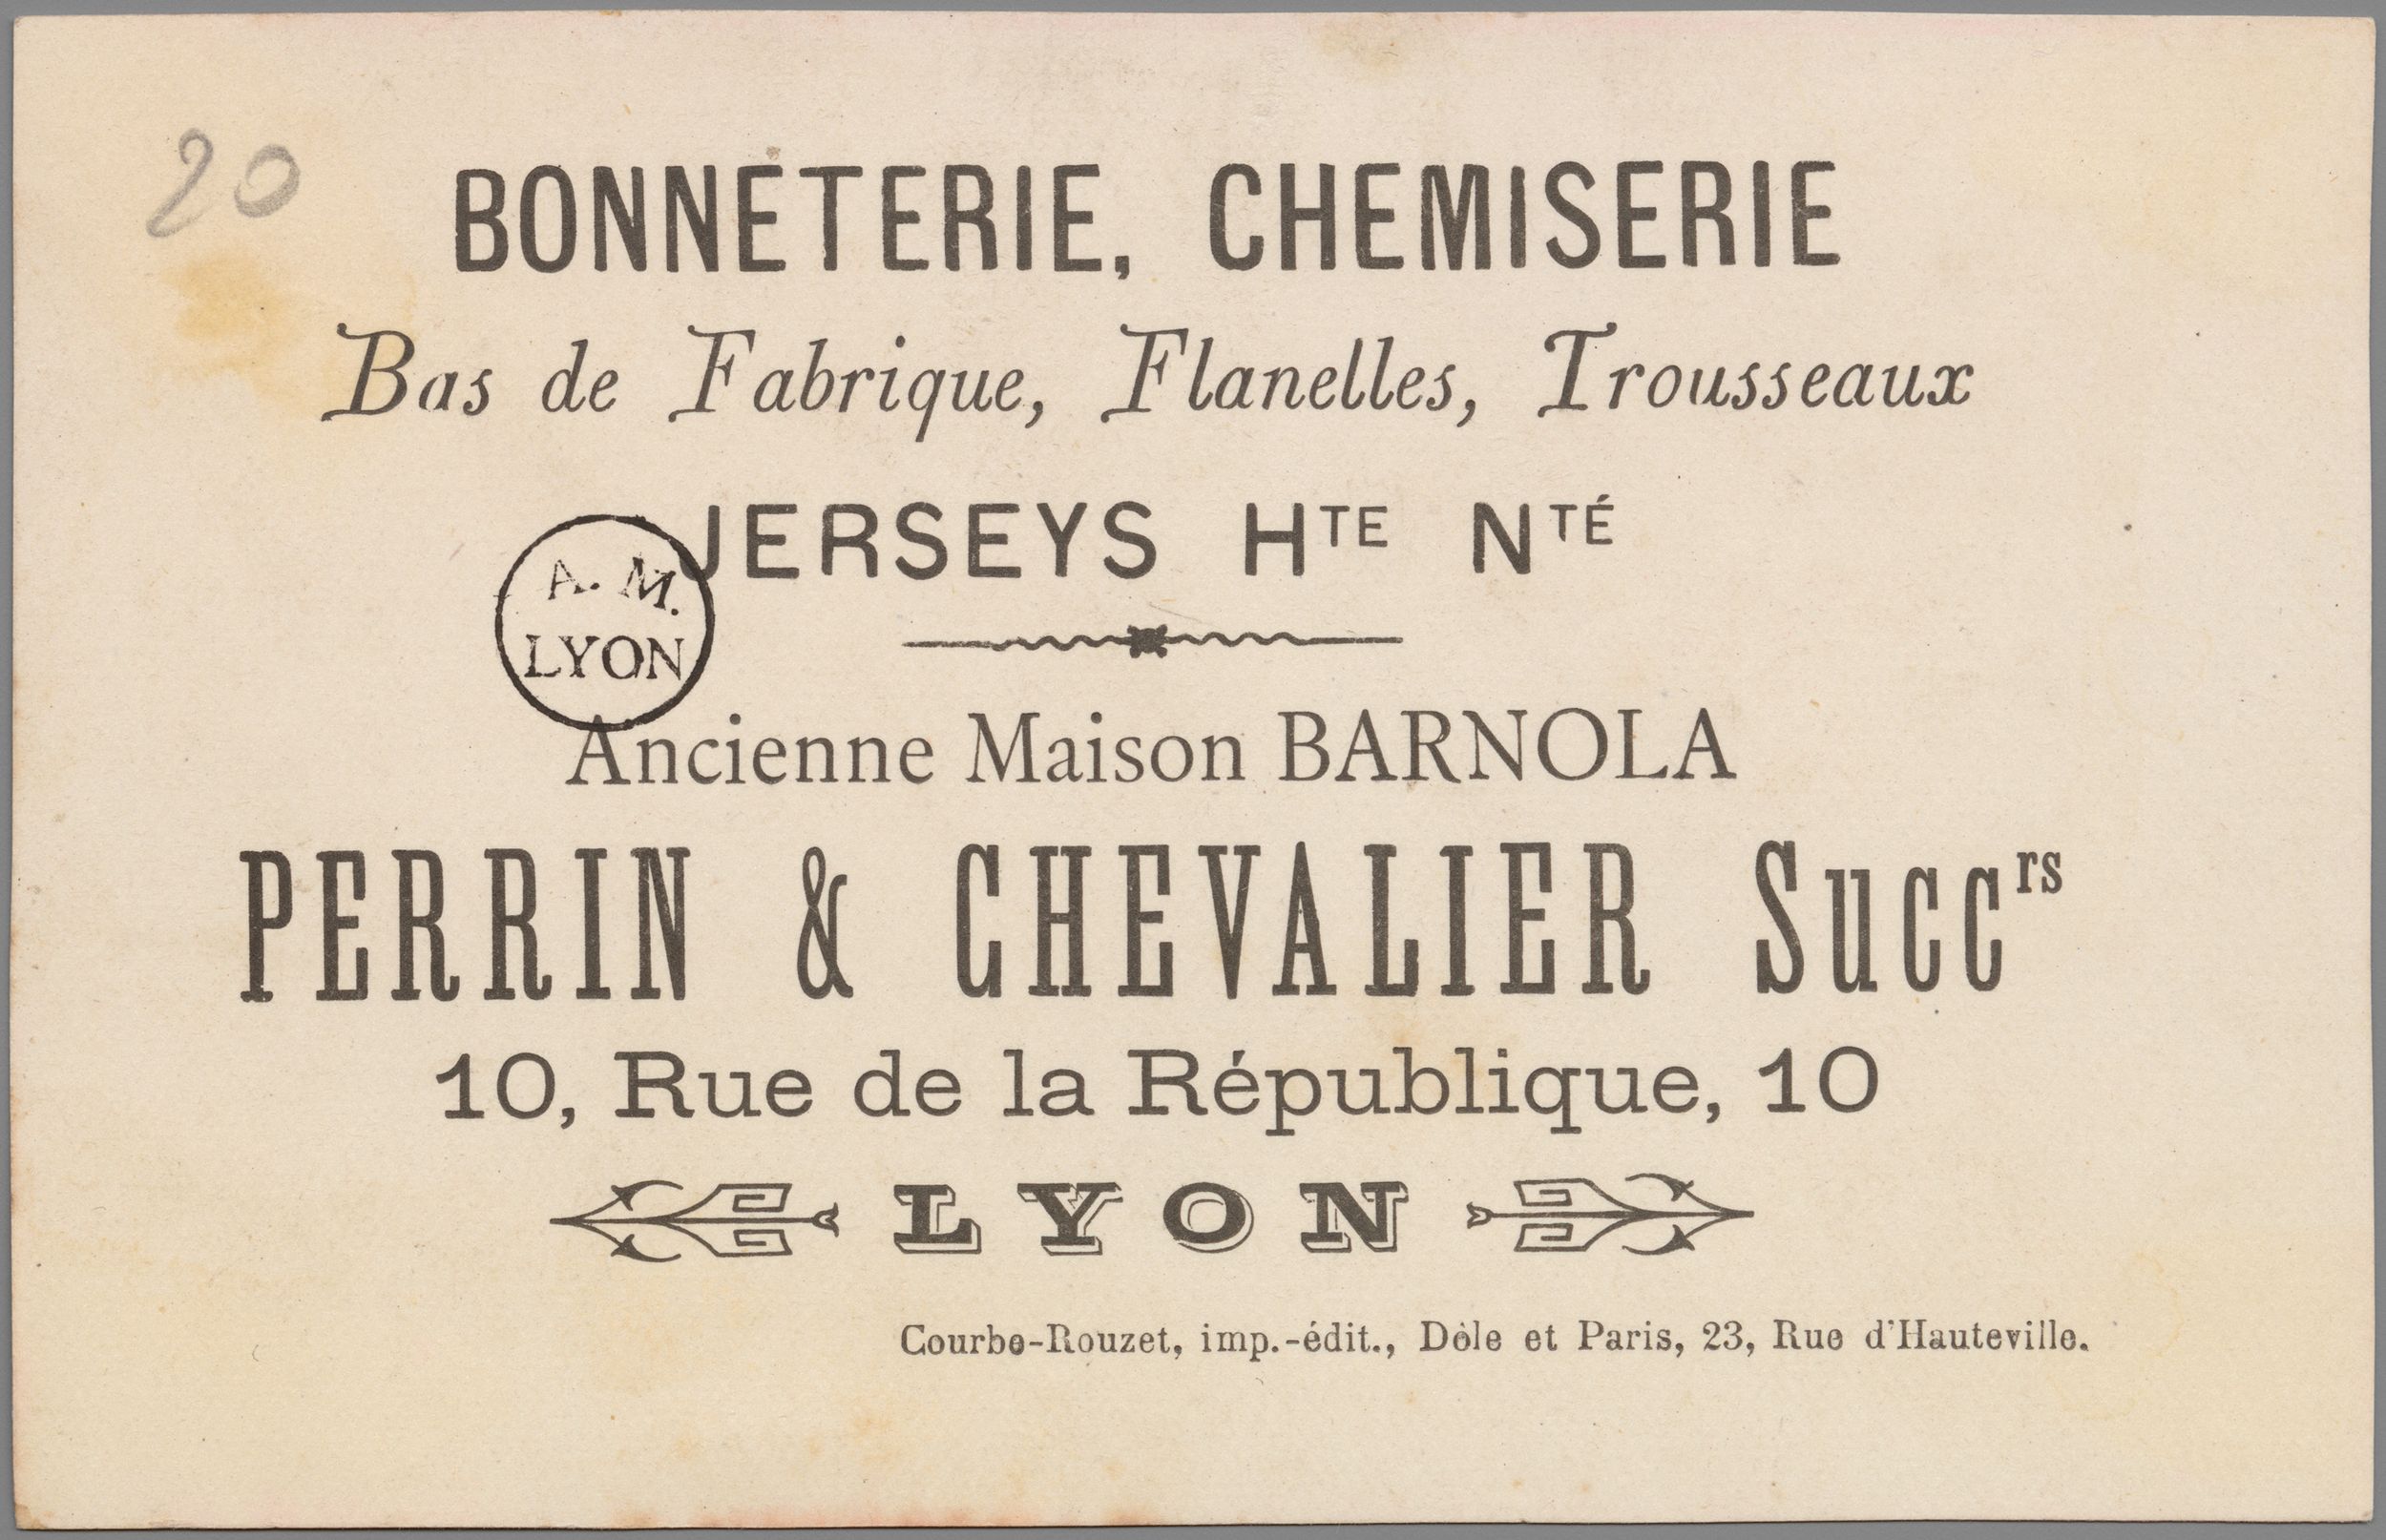 Perrin & Chevalier - Bonneterie, chemiserie : chromolithographie publicitaire NB (fin XIXe, cote : 10FI/19)